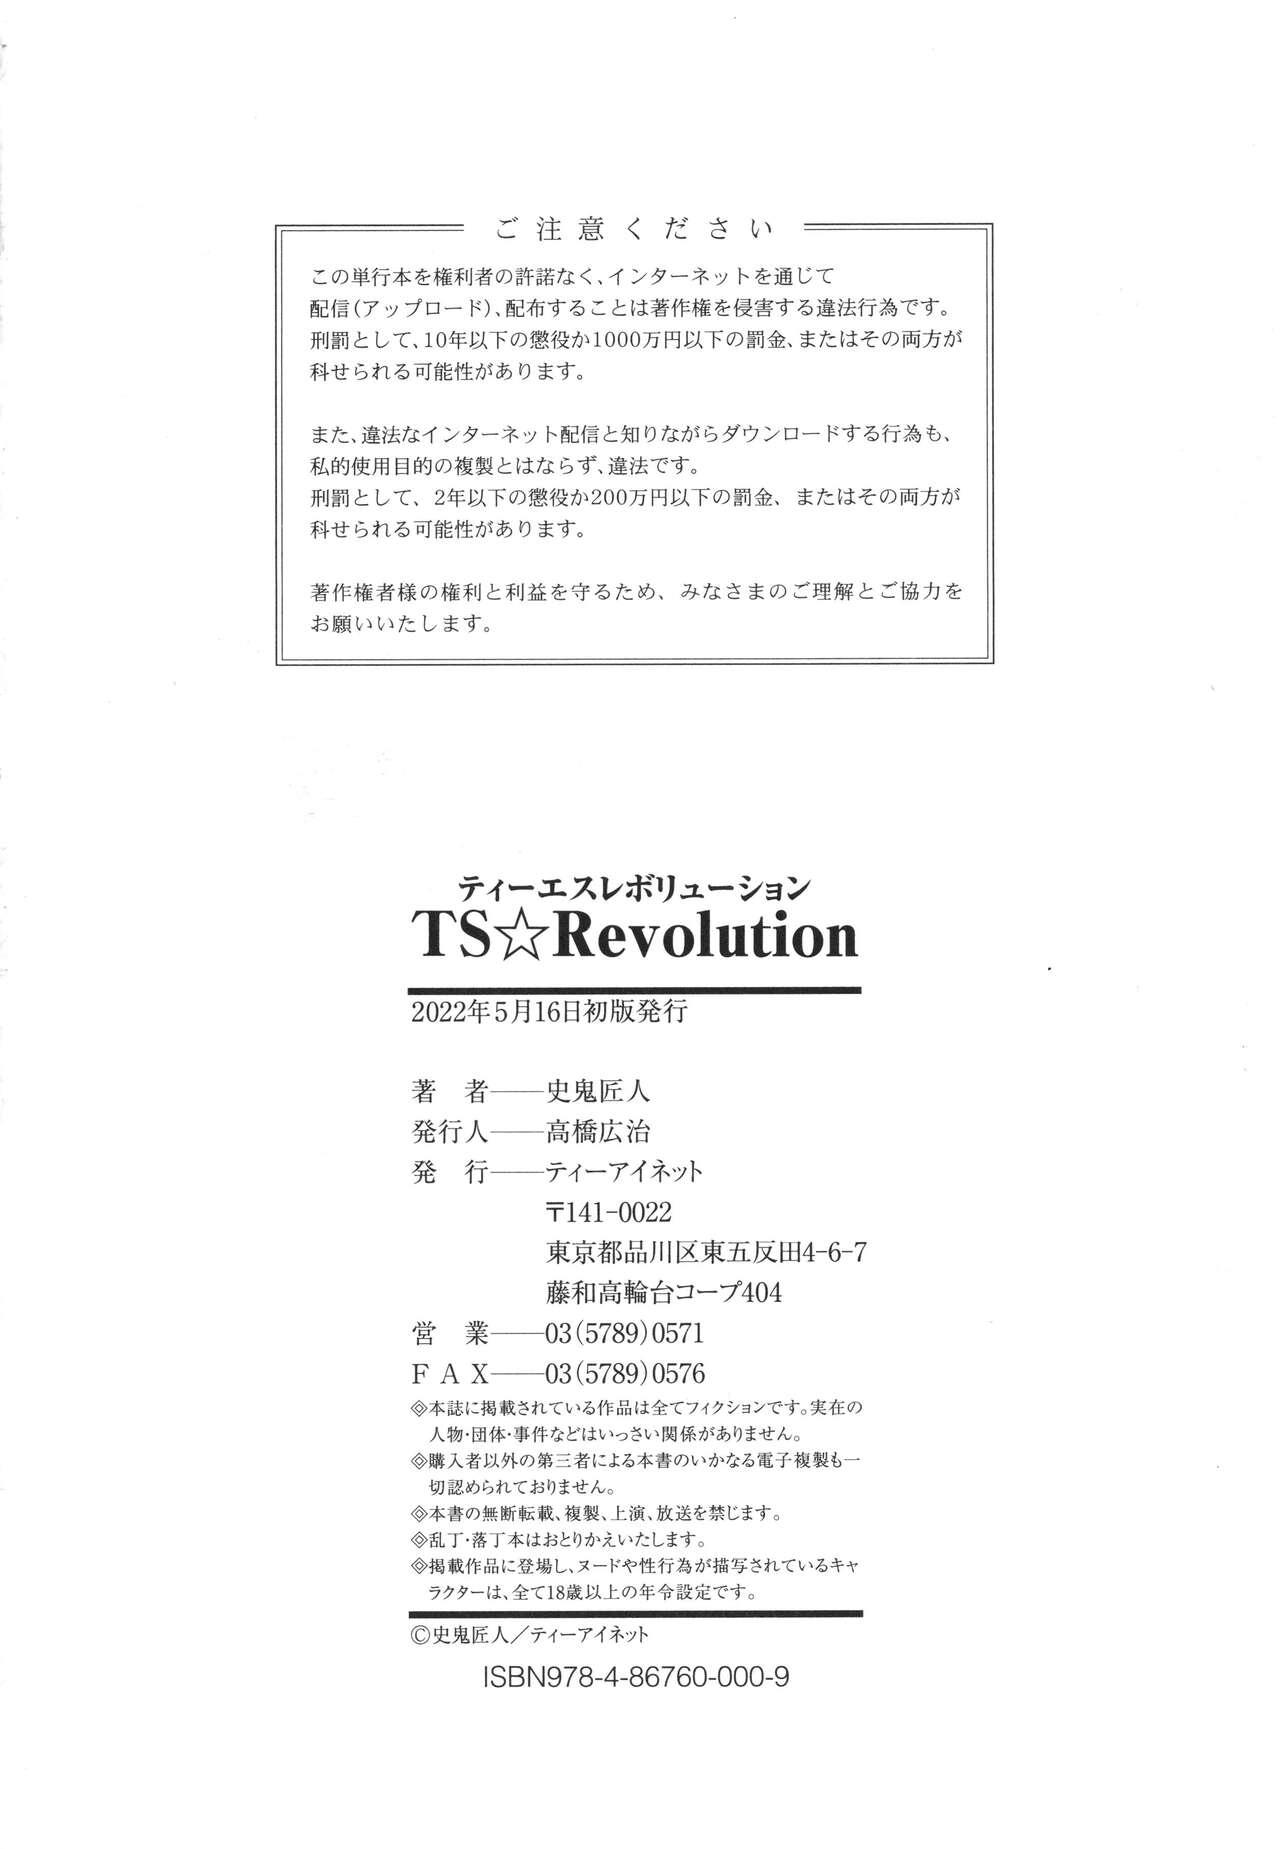 TS Revolution 227